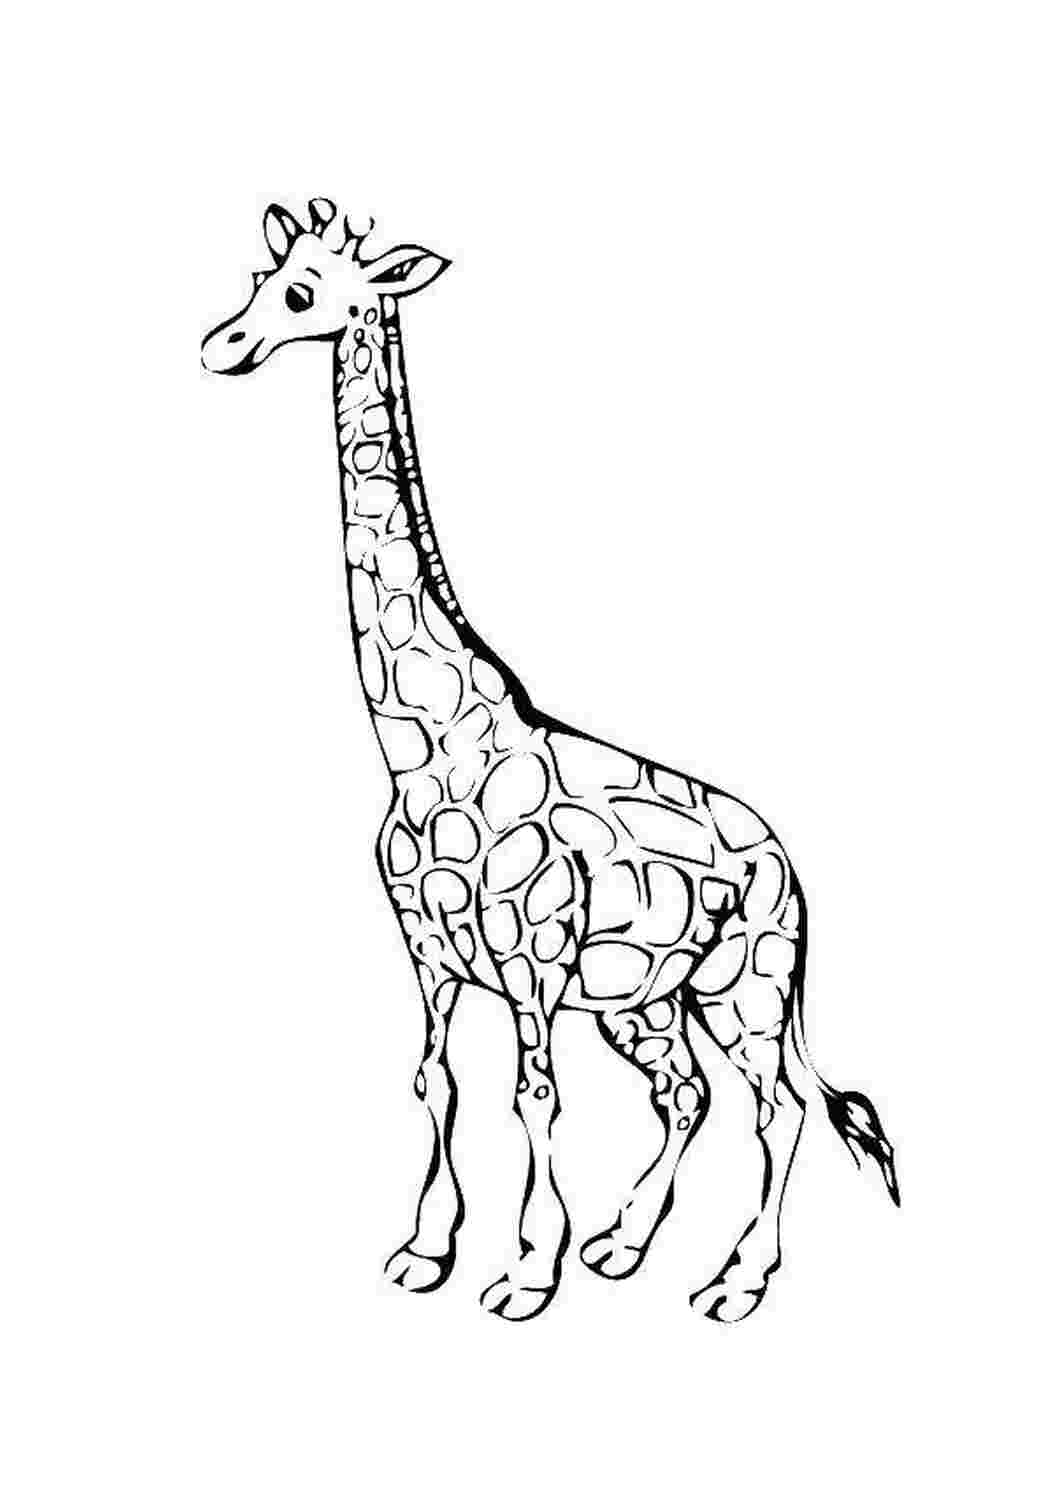 Эскиз жирафа для раскрашивания